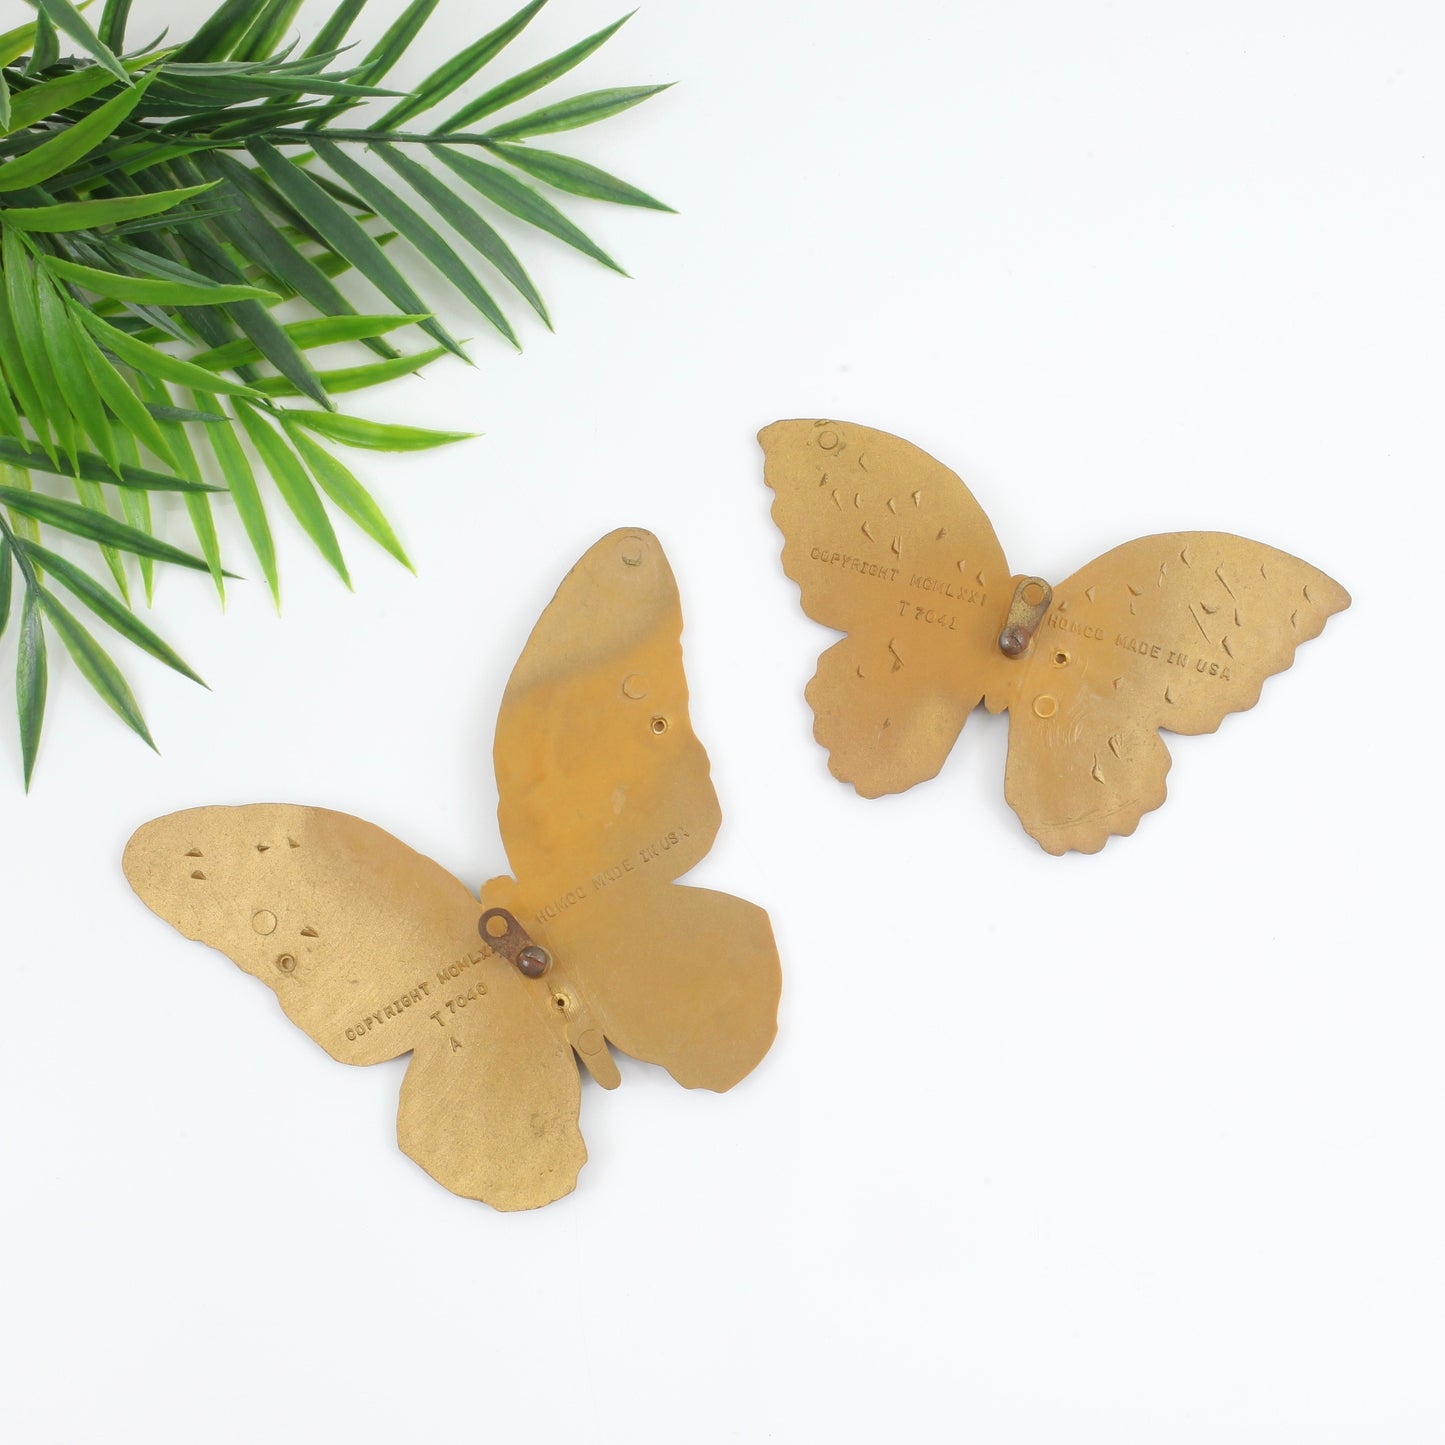 SOLD - Vintage Golden Butterflies Wall Decor